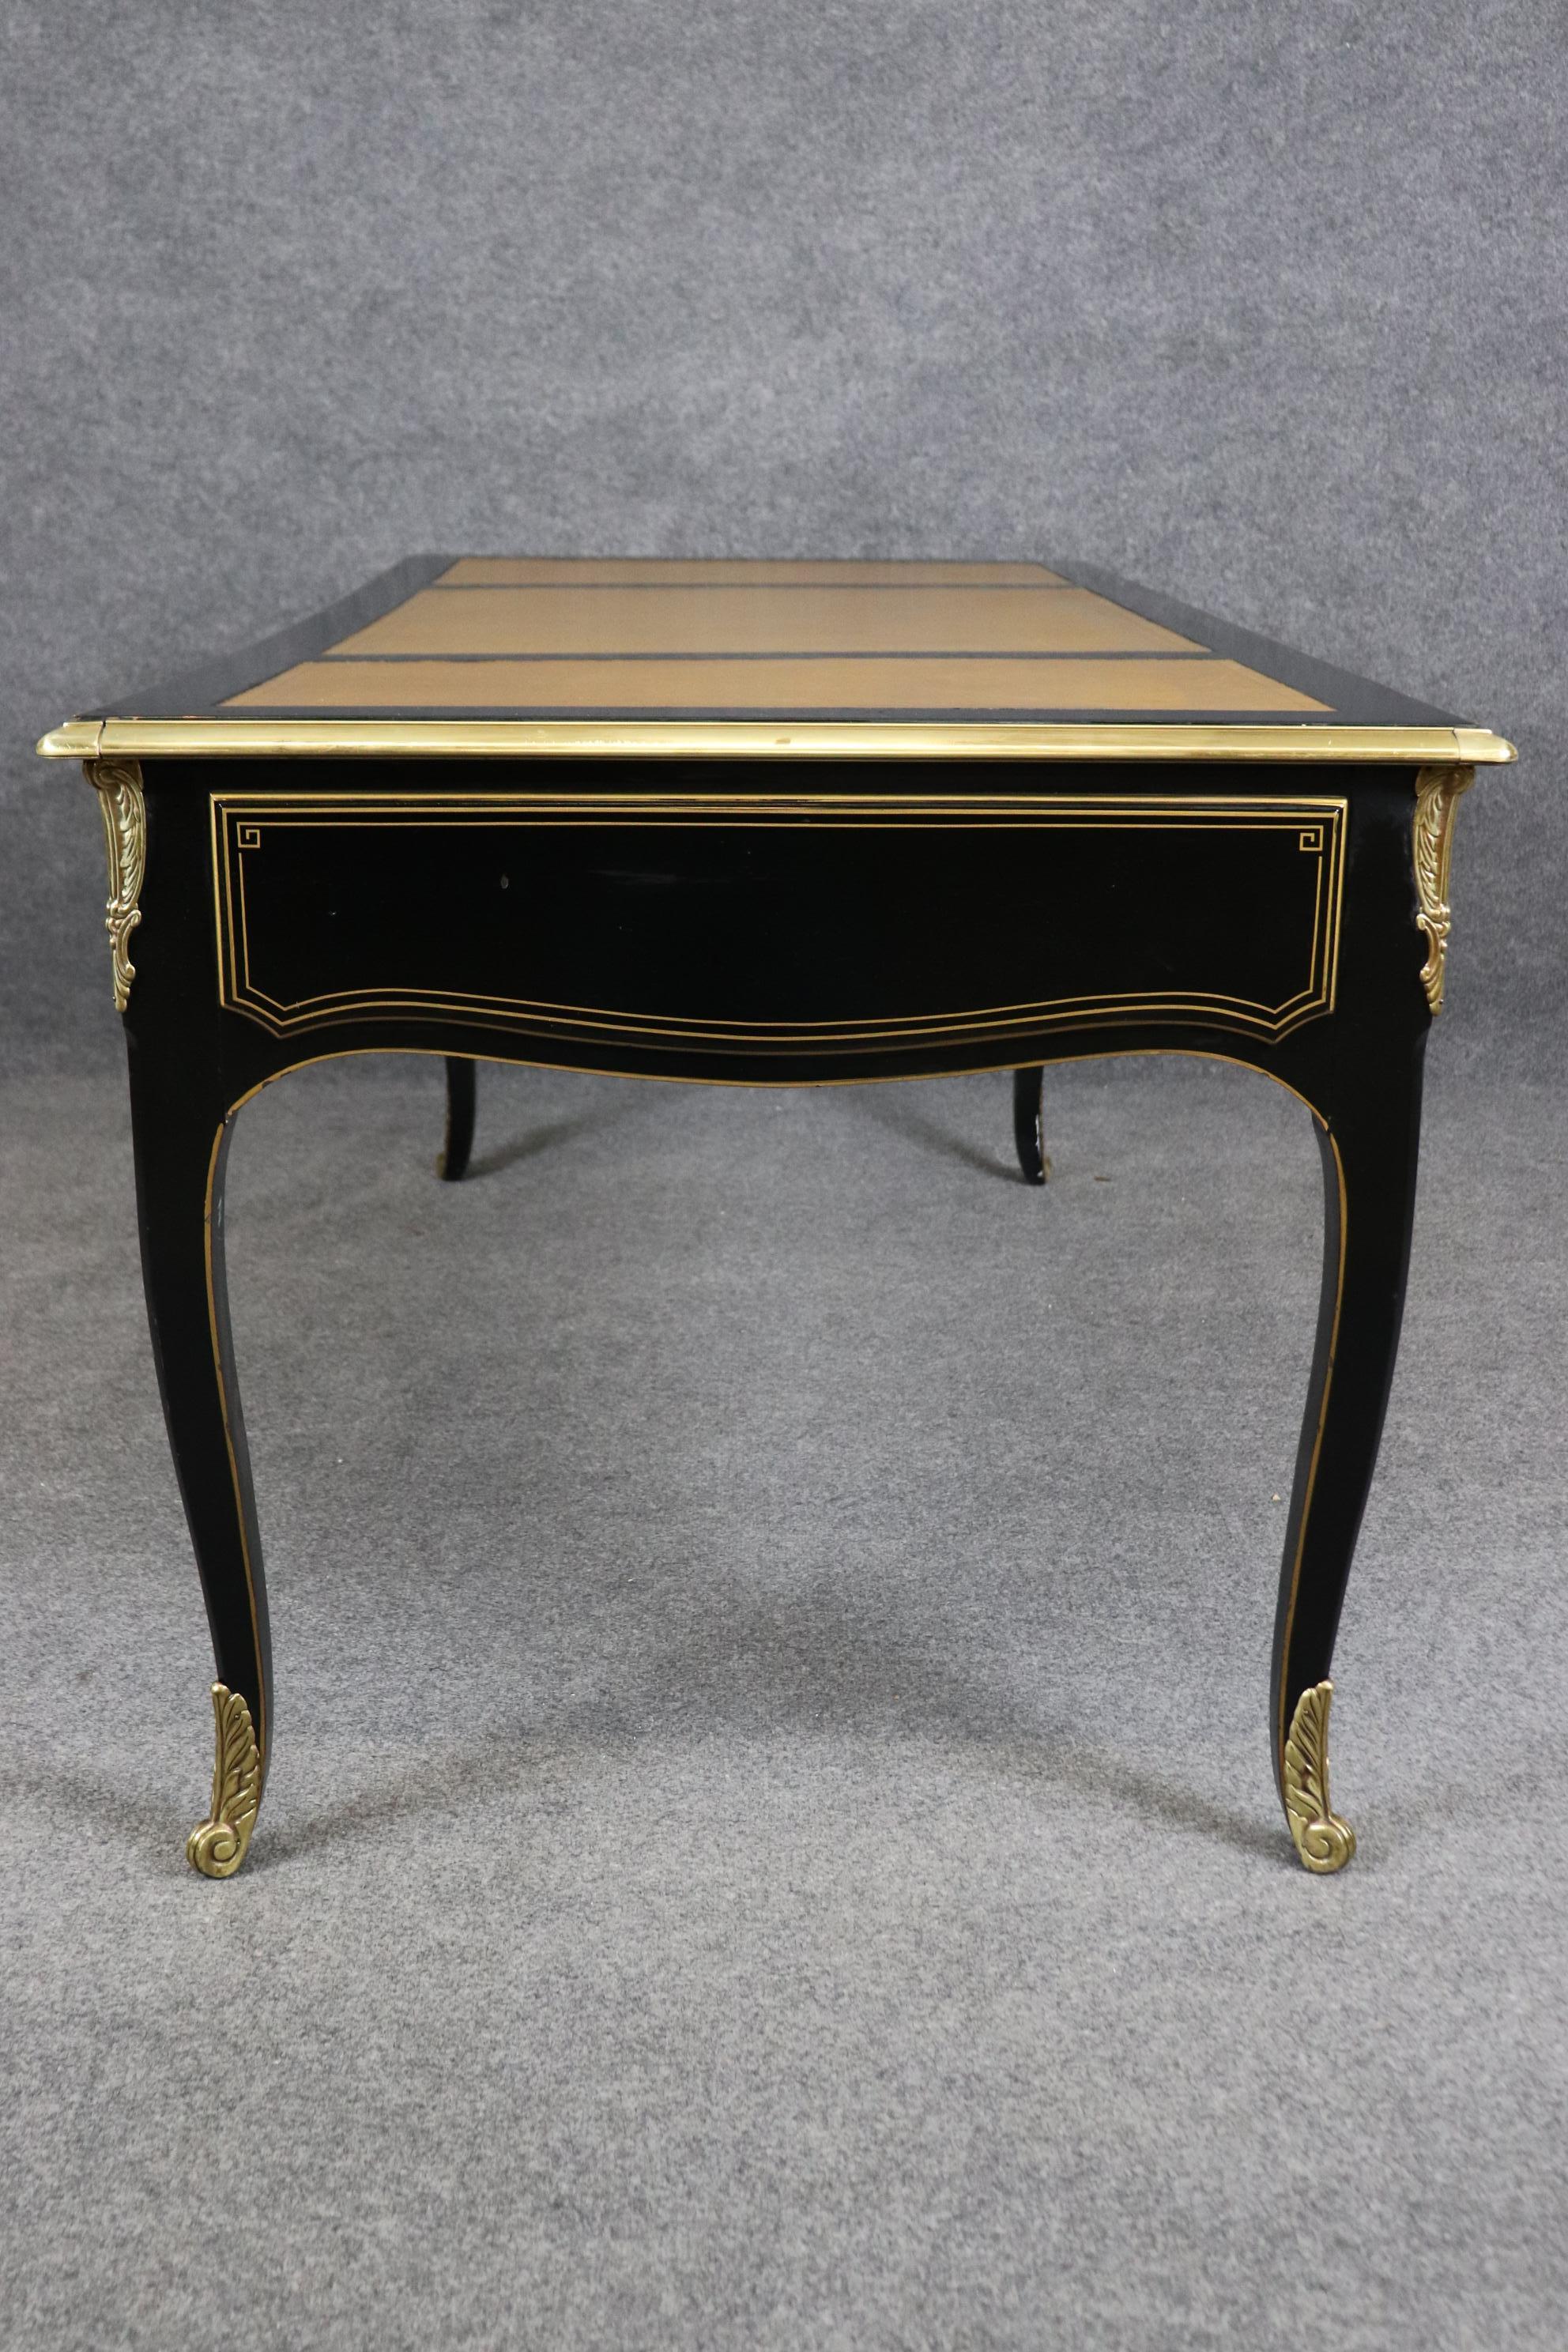 Fine American-Made Leather Top Brass Ormolu Louis XV Style Bureau Plat Desk  For Sale 1